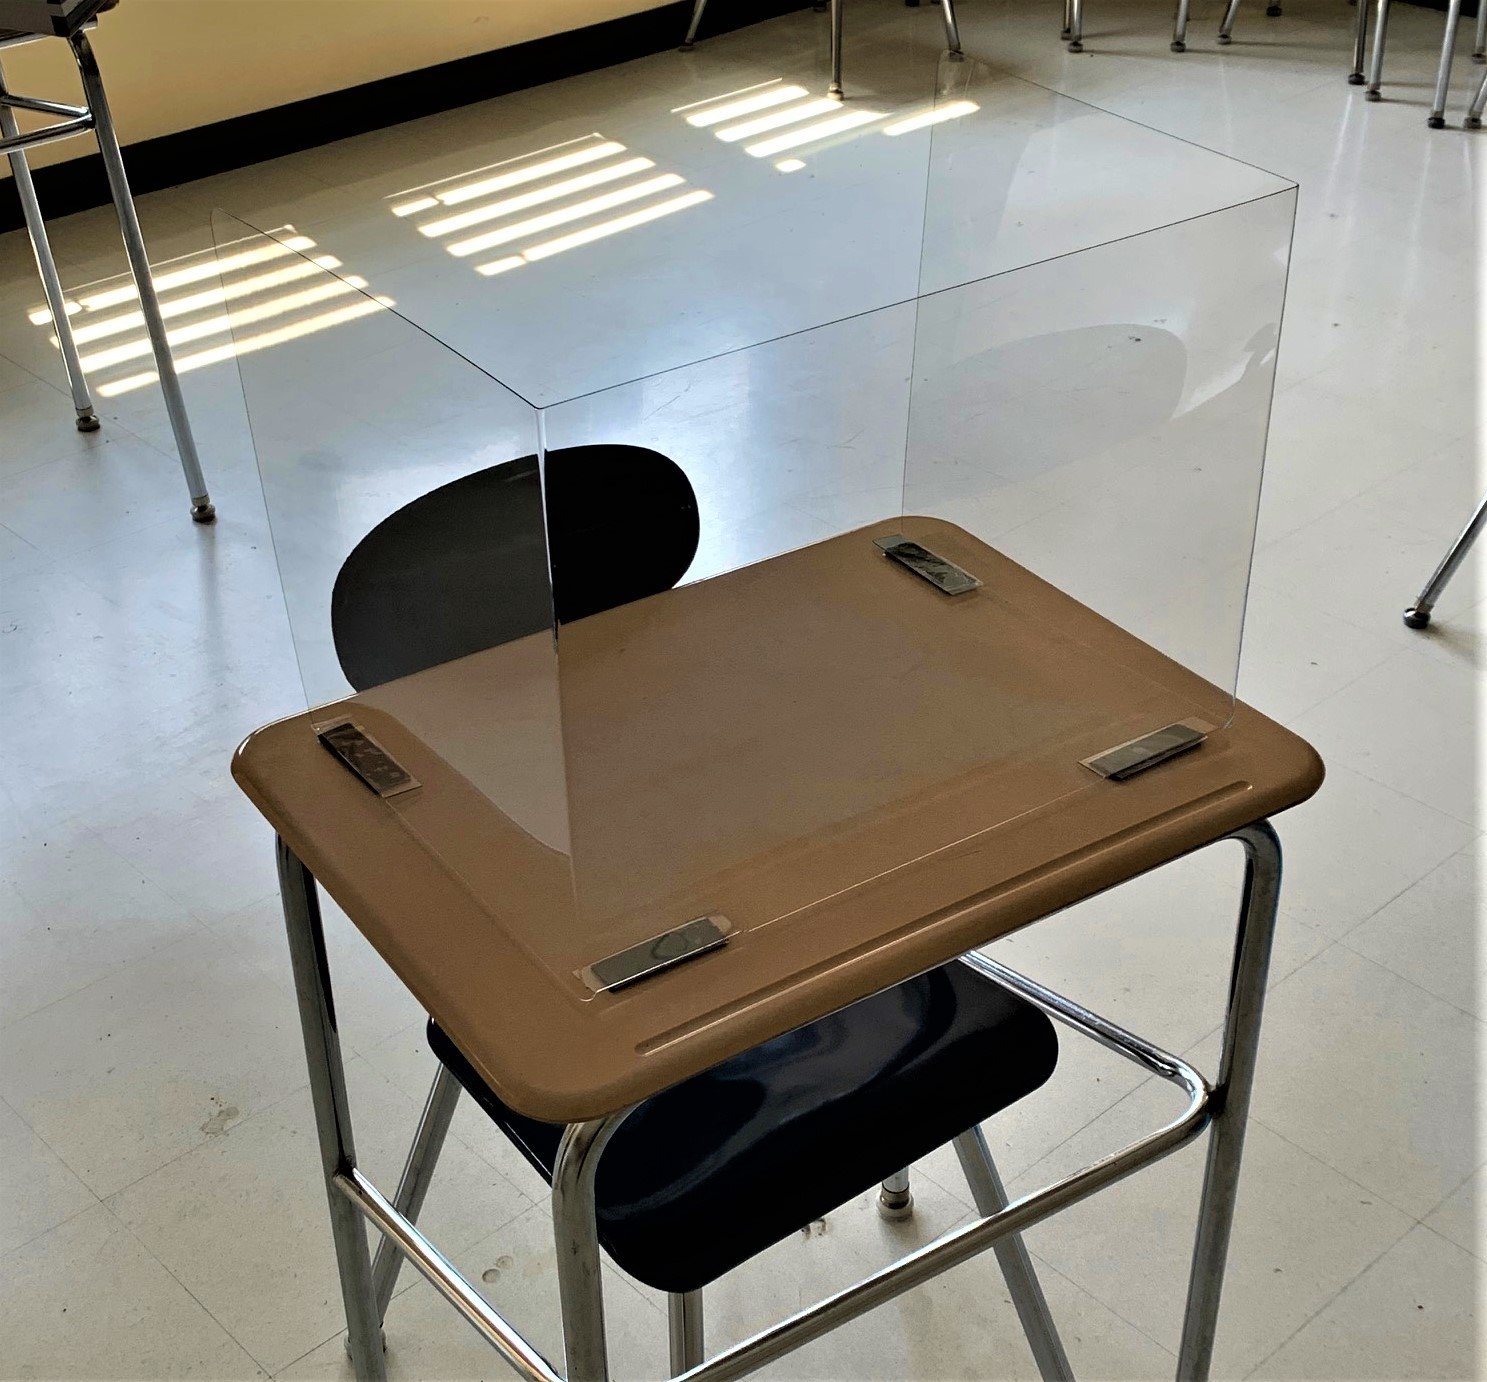 (Protectores de escritorio para estudiantes - .040 PETG - NY) Protectores de escritorio para estudiantes - PETG semirrígido